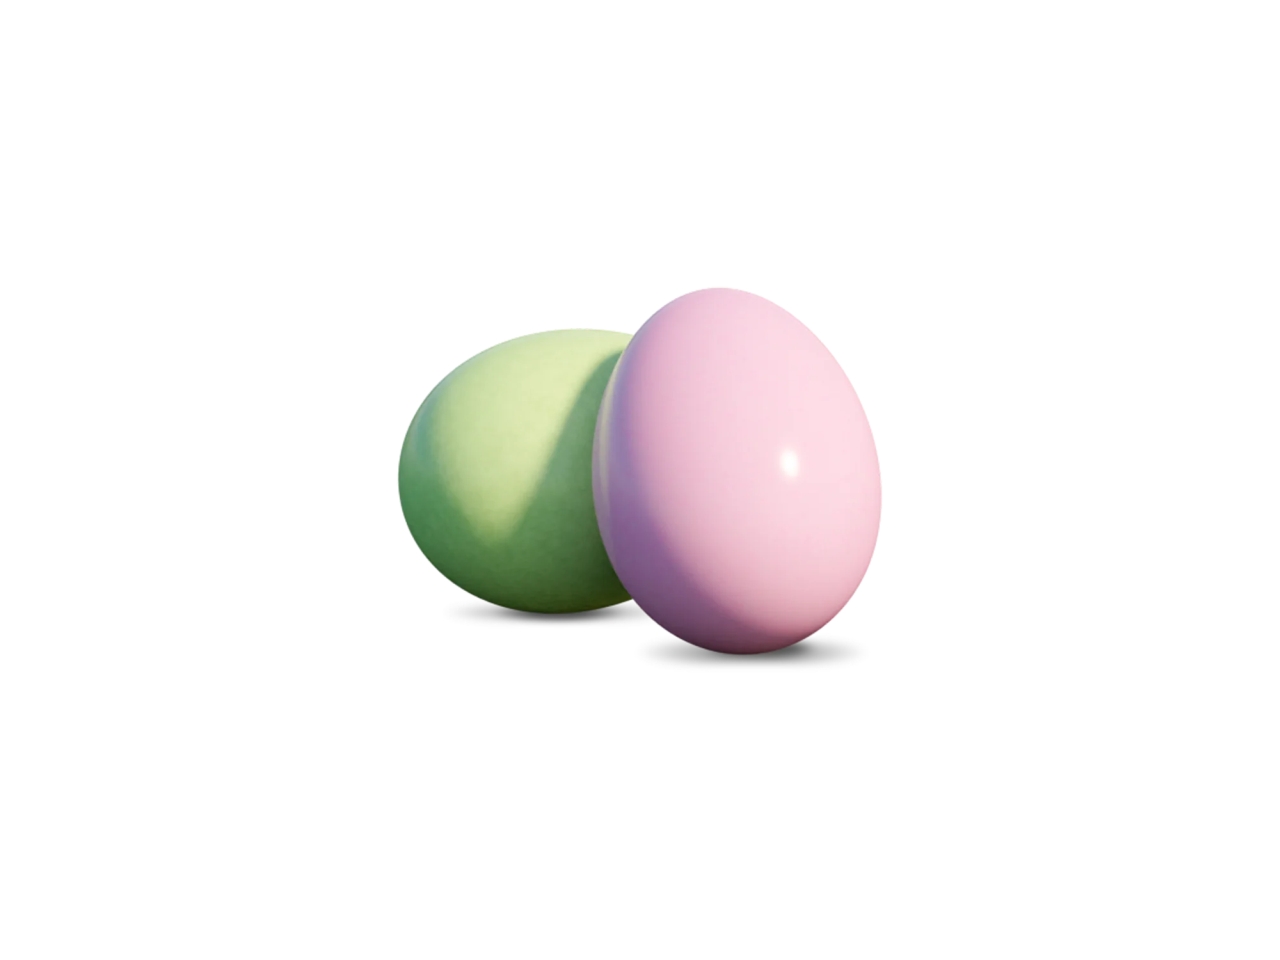 Confezione uova gallina confettate colorate 6 uova